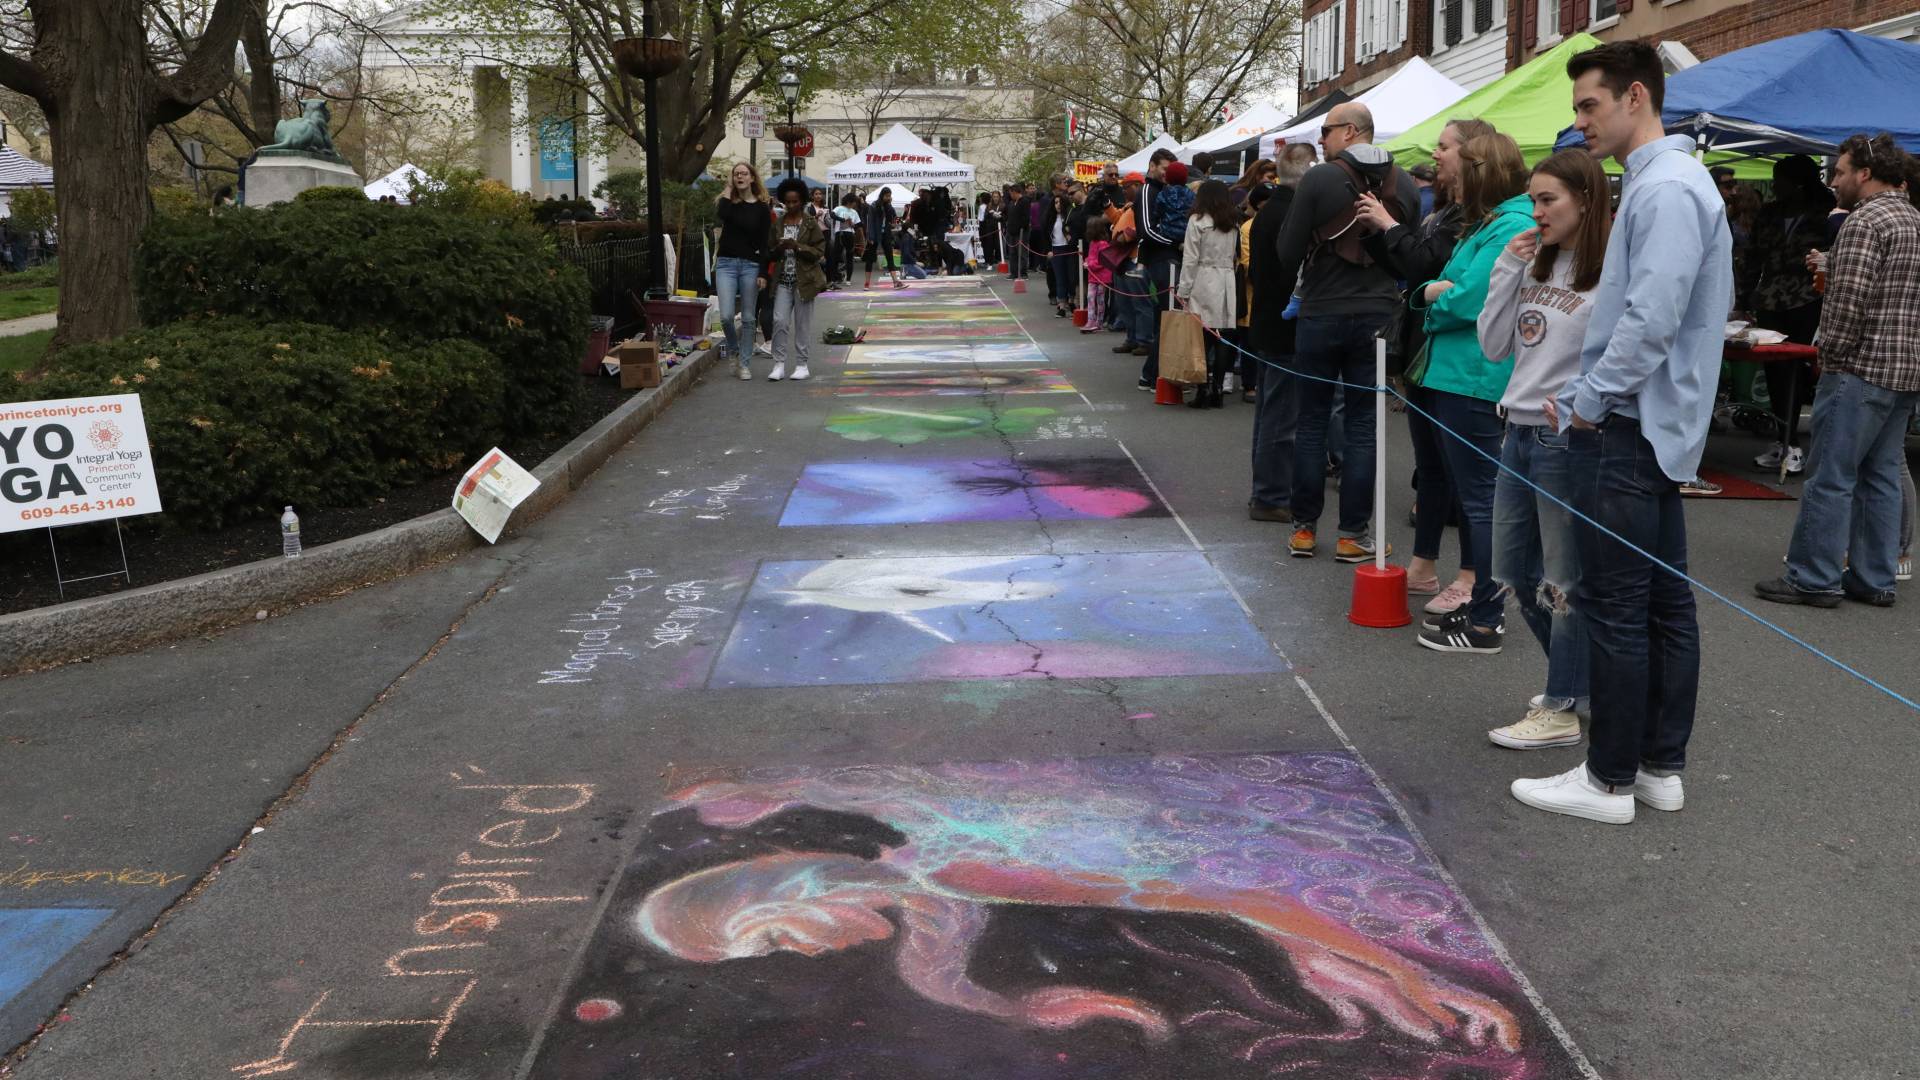 Chalk art on street during Communiversity